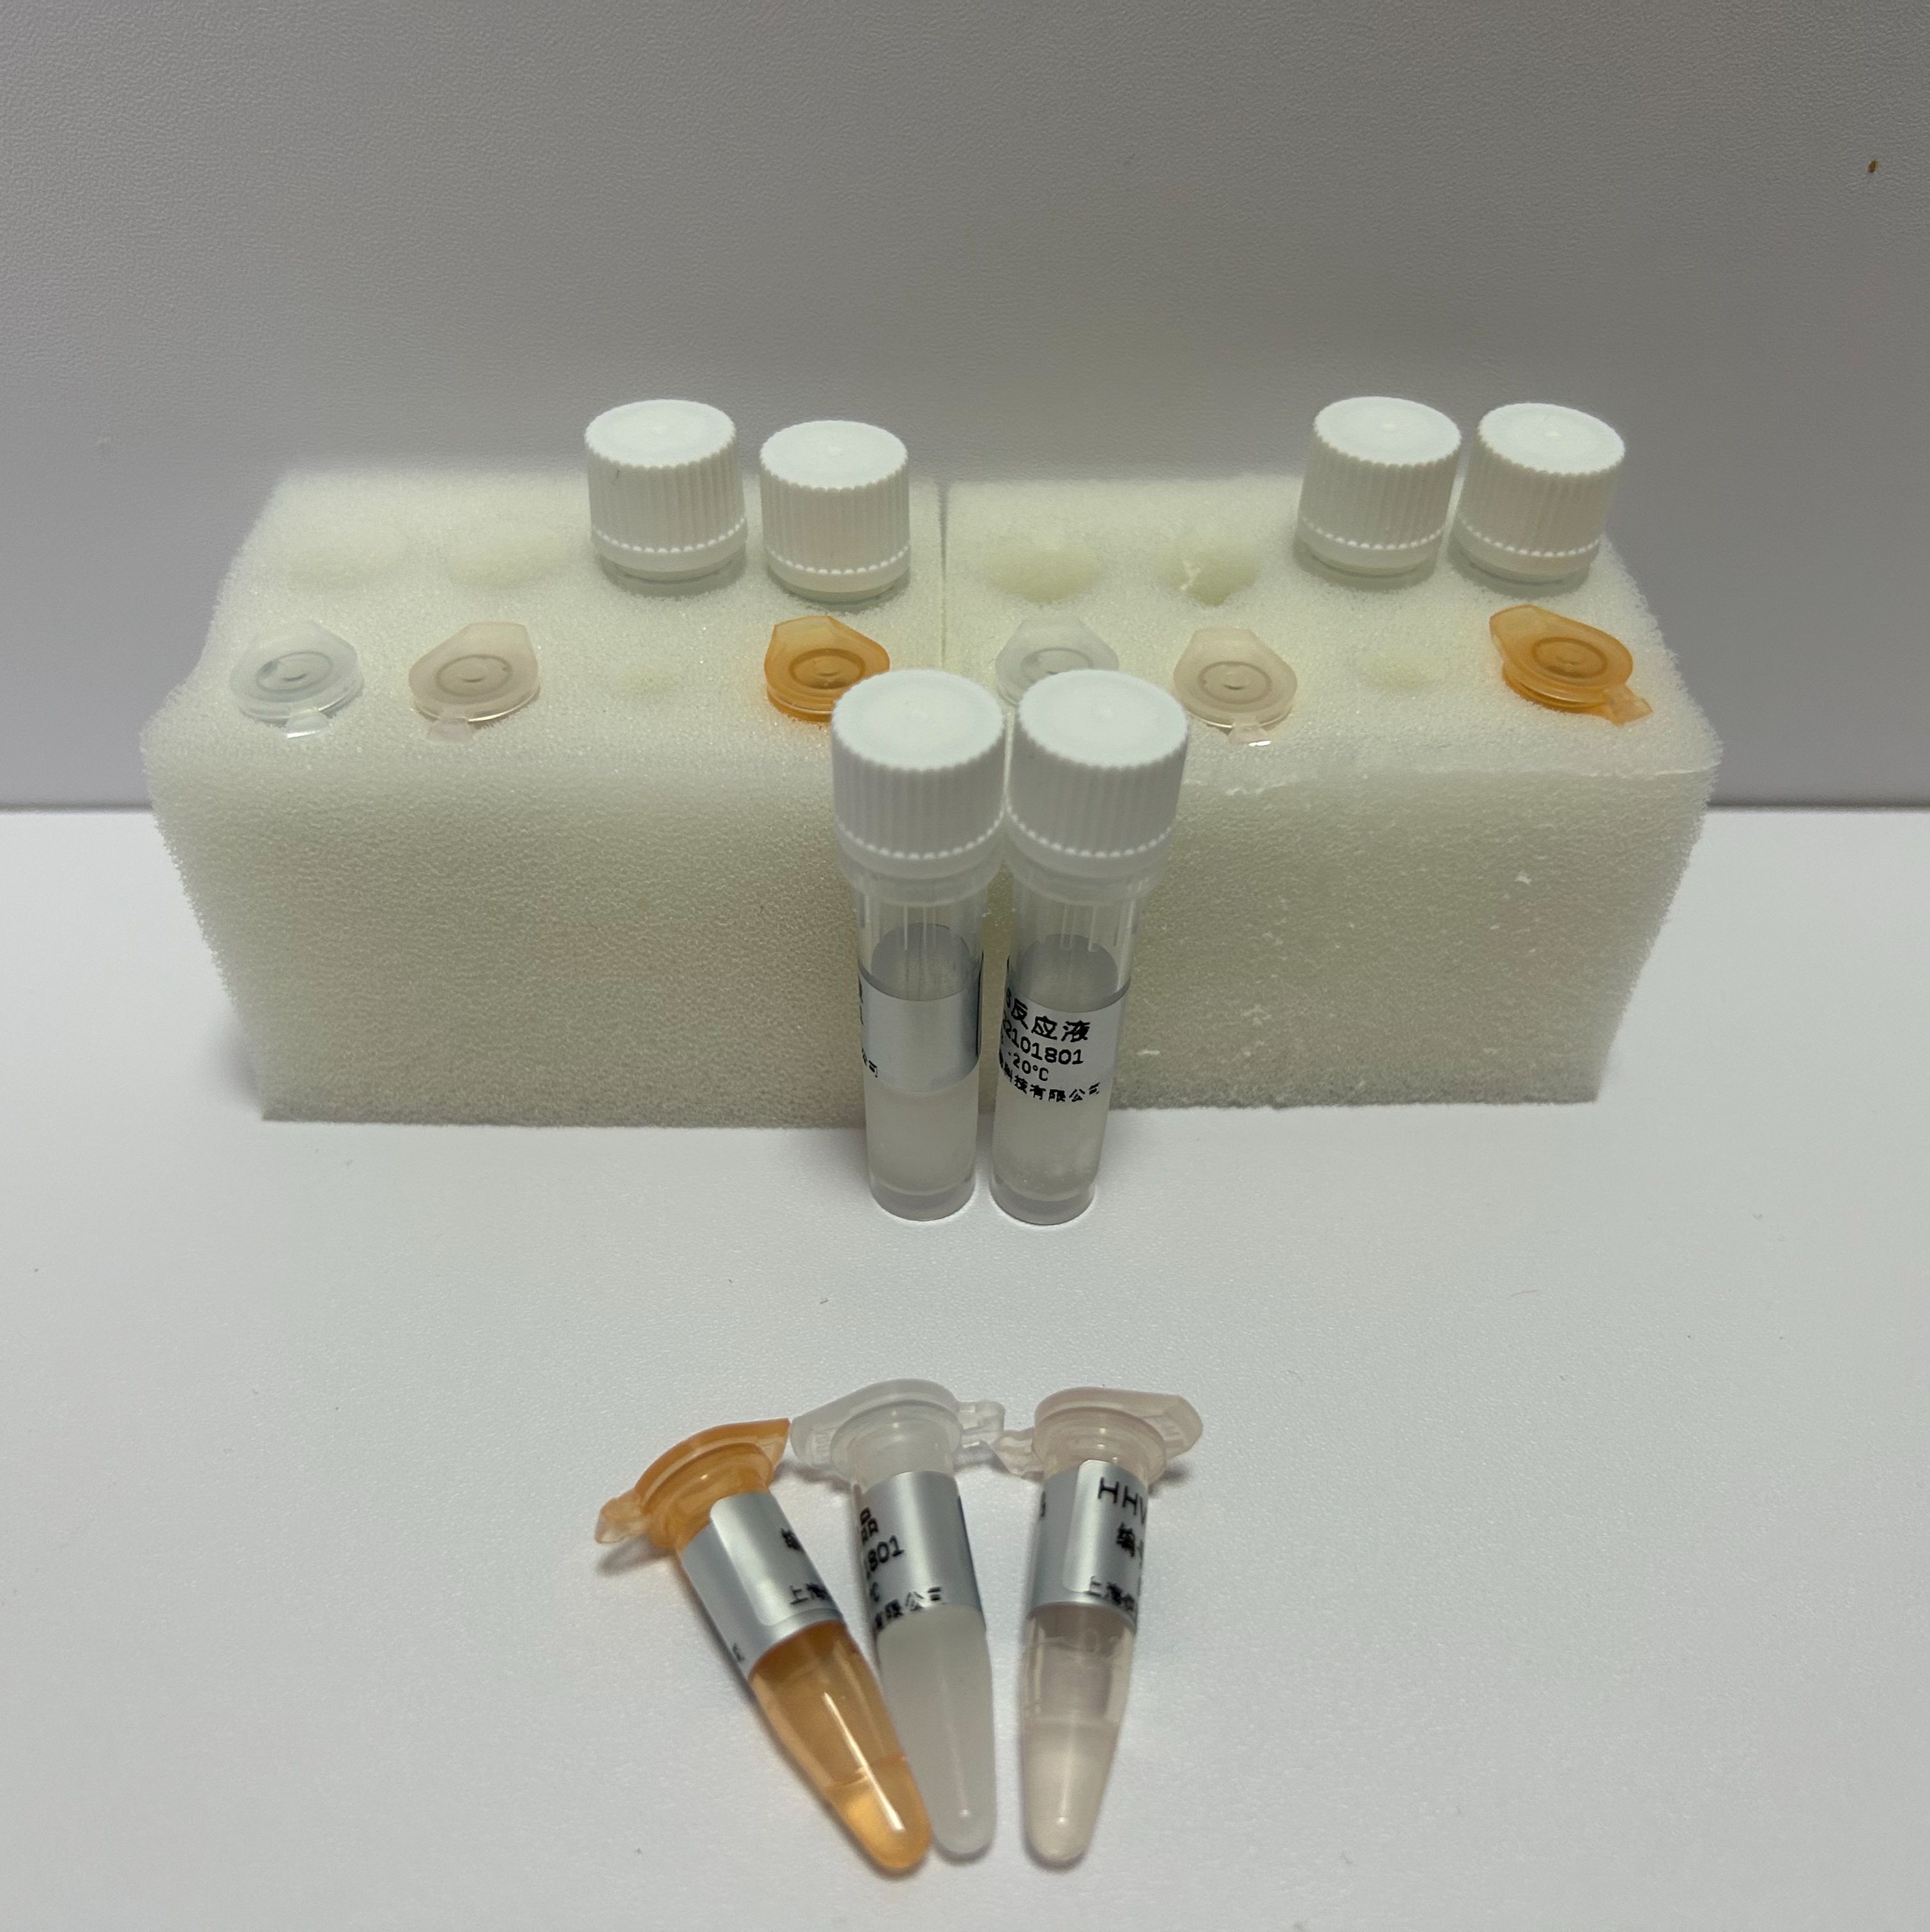 布氏罗得西亚锥虫染料法荧光定量PCR试剂盒